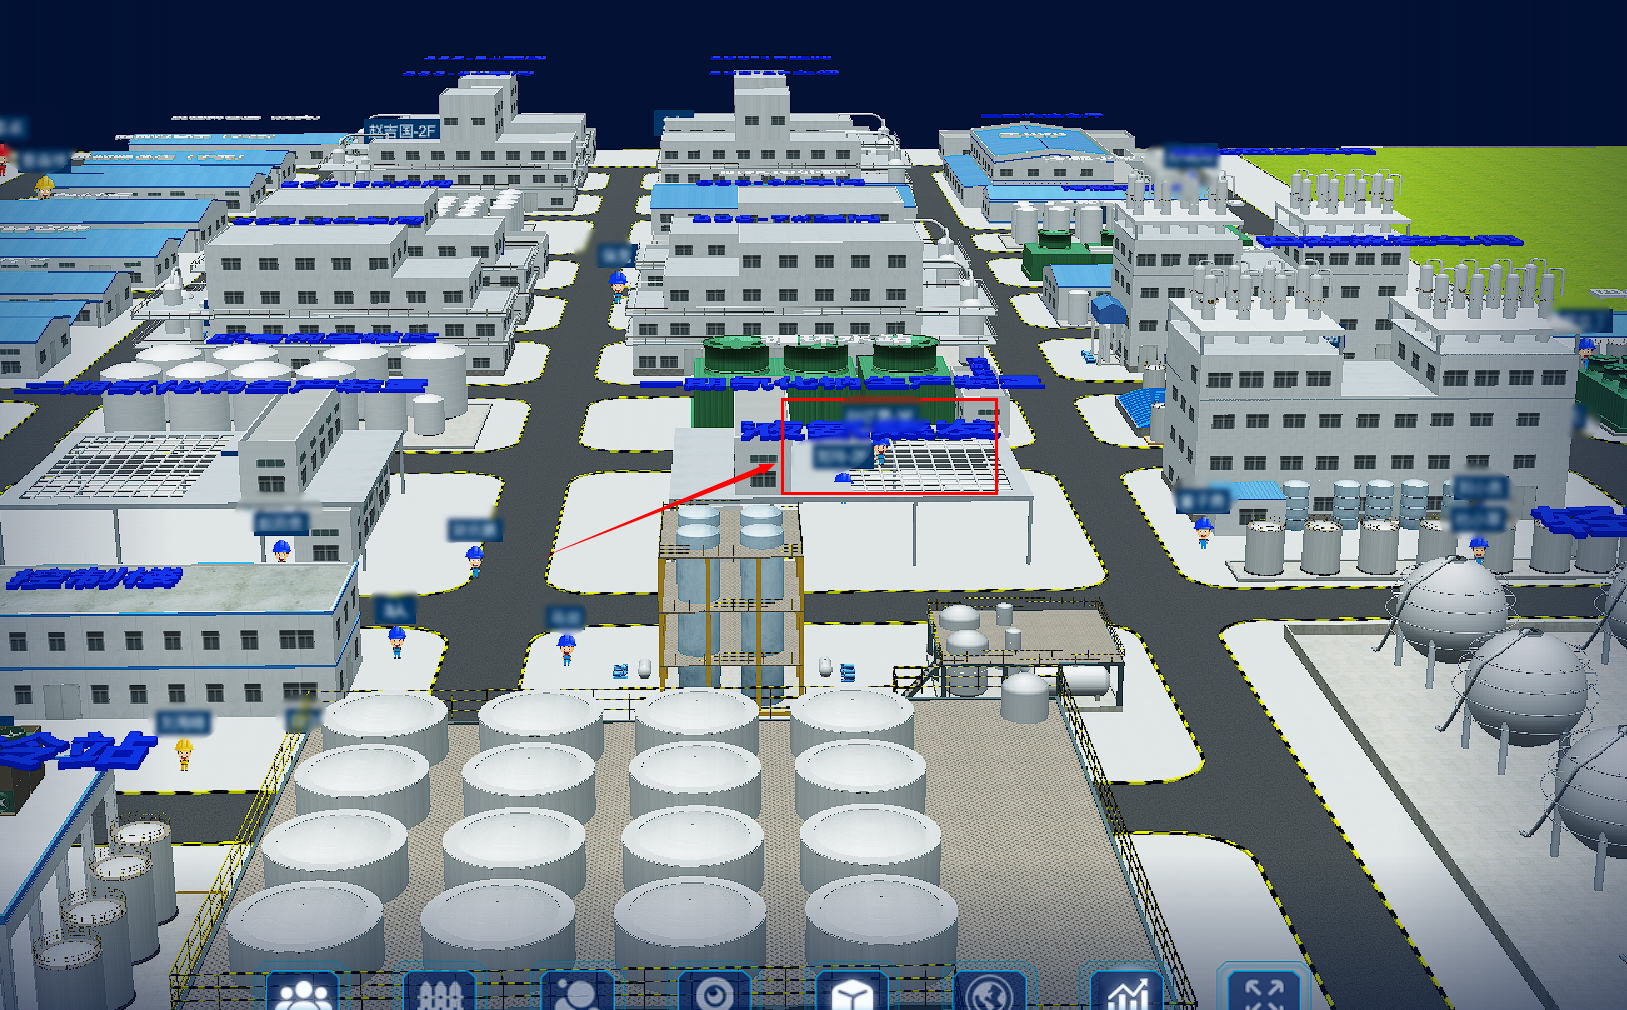 3D建模地图分层展示化工油库人员定位系统支持UWB蓝牙LoRa北斗GPS图片